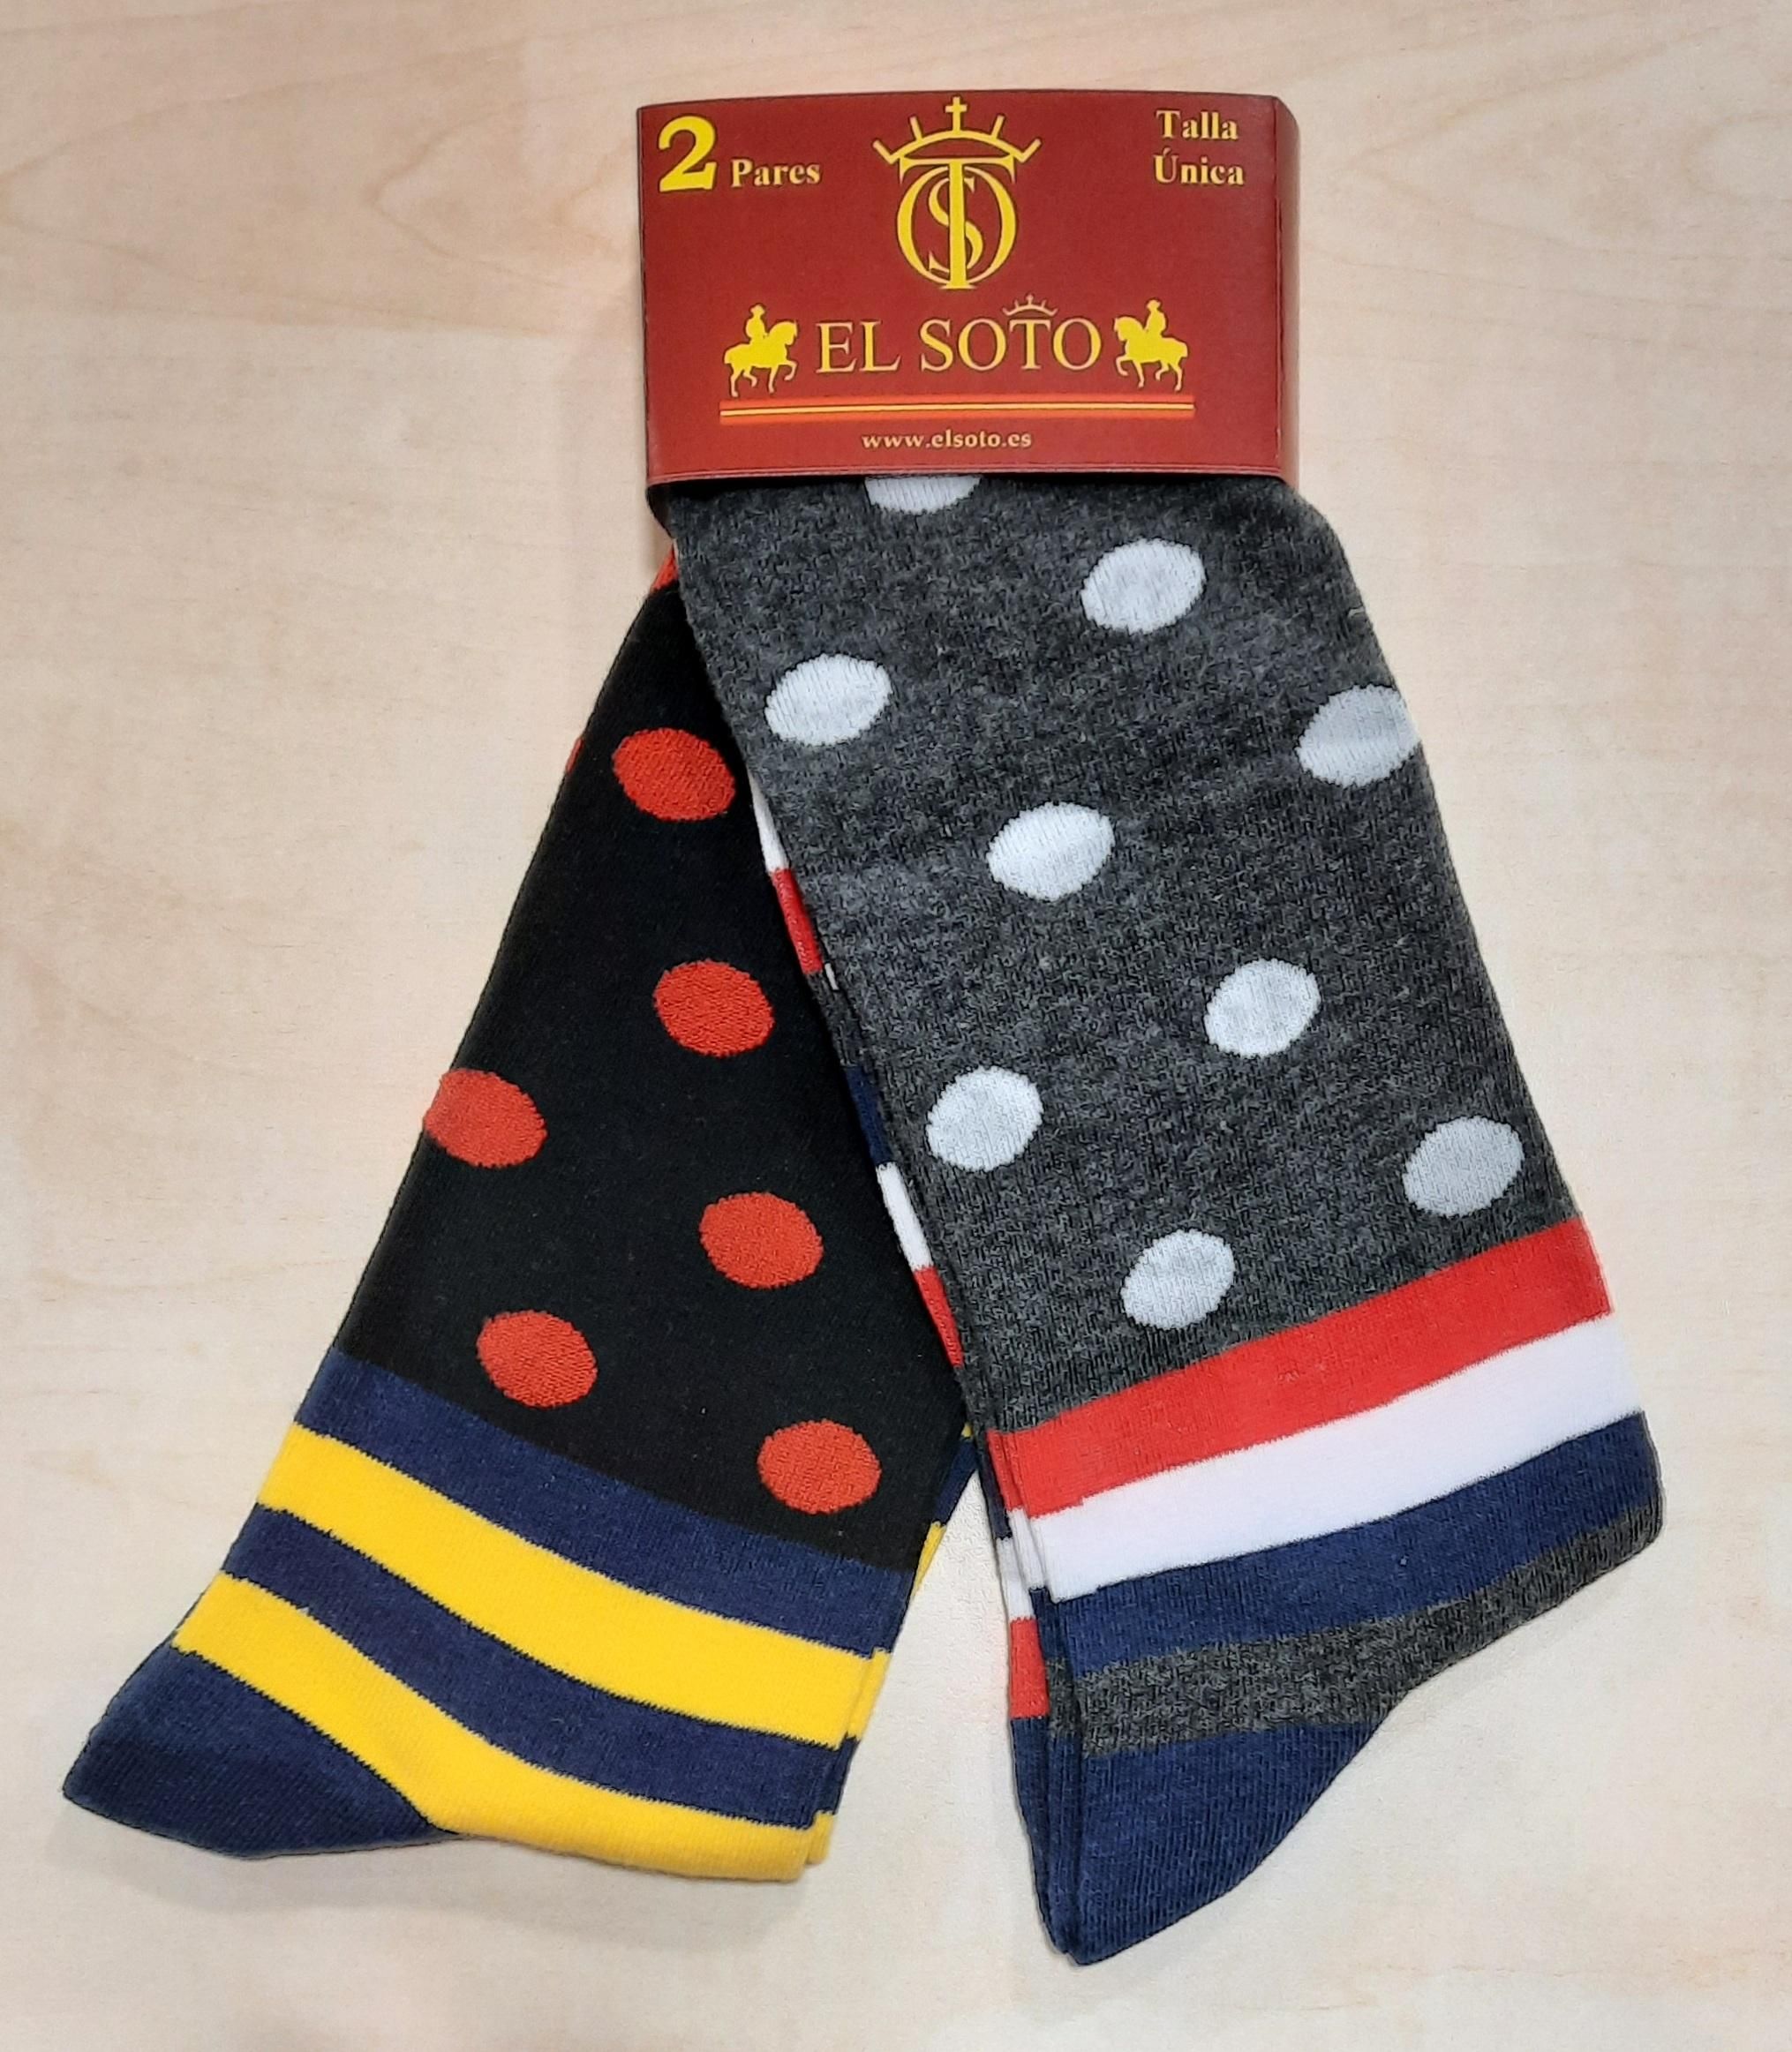 Lote de 2 pares de calcetines de Lunares Rayas uno en negro con lunar rojo y rayas amarillo y azul y otro en gris con azul celeste con rayas en